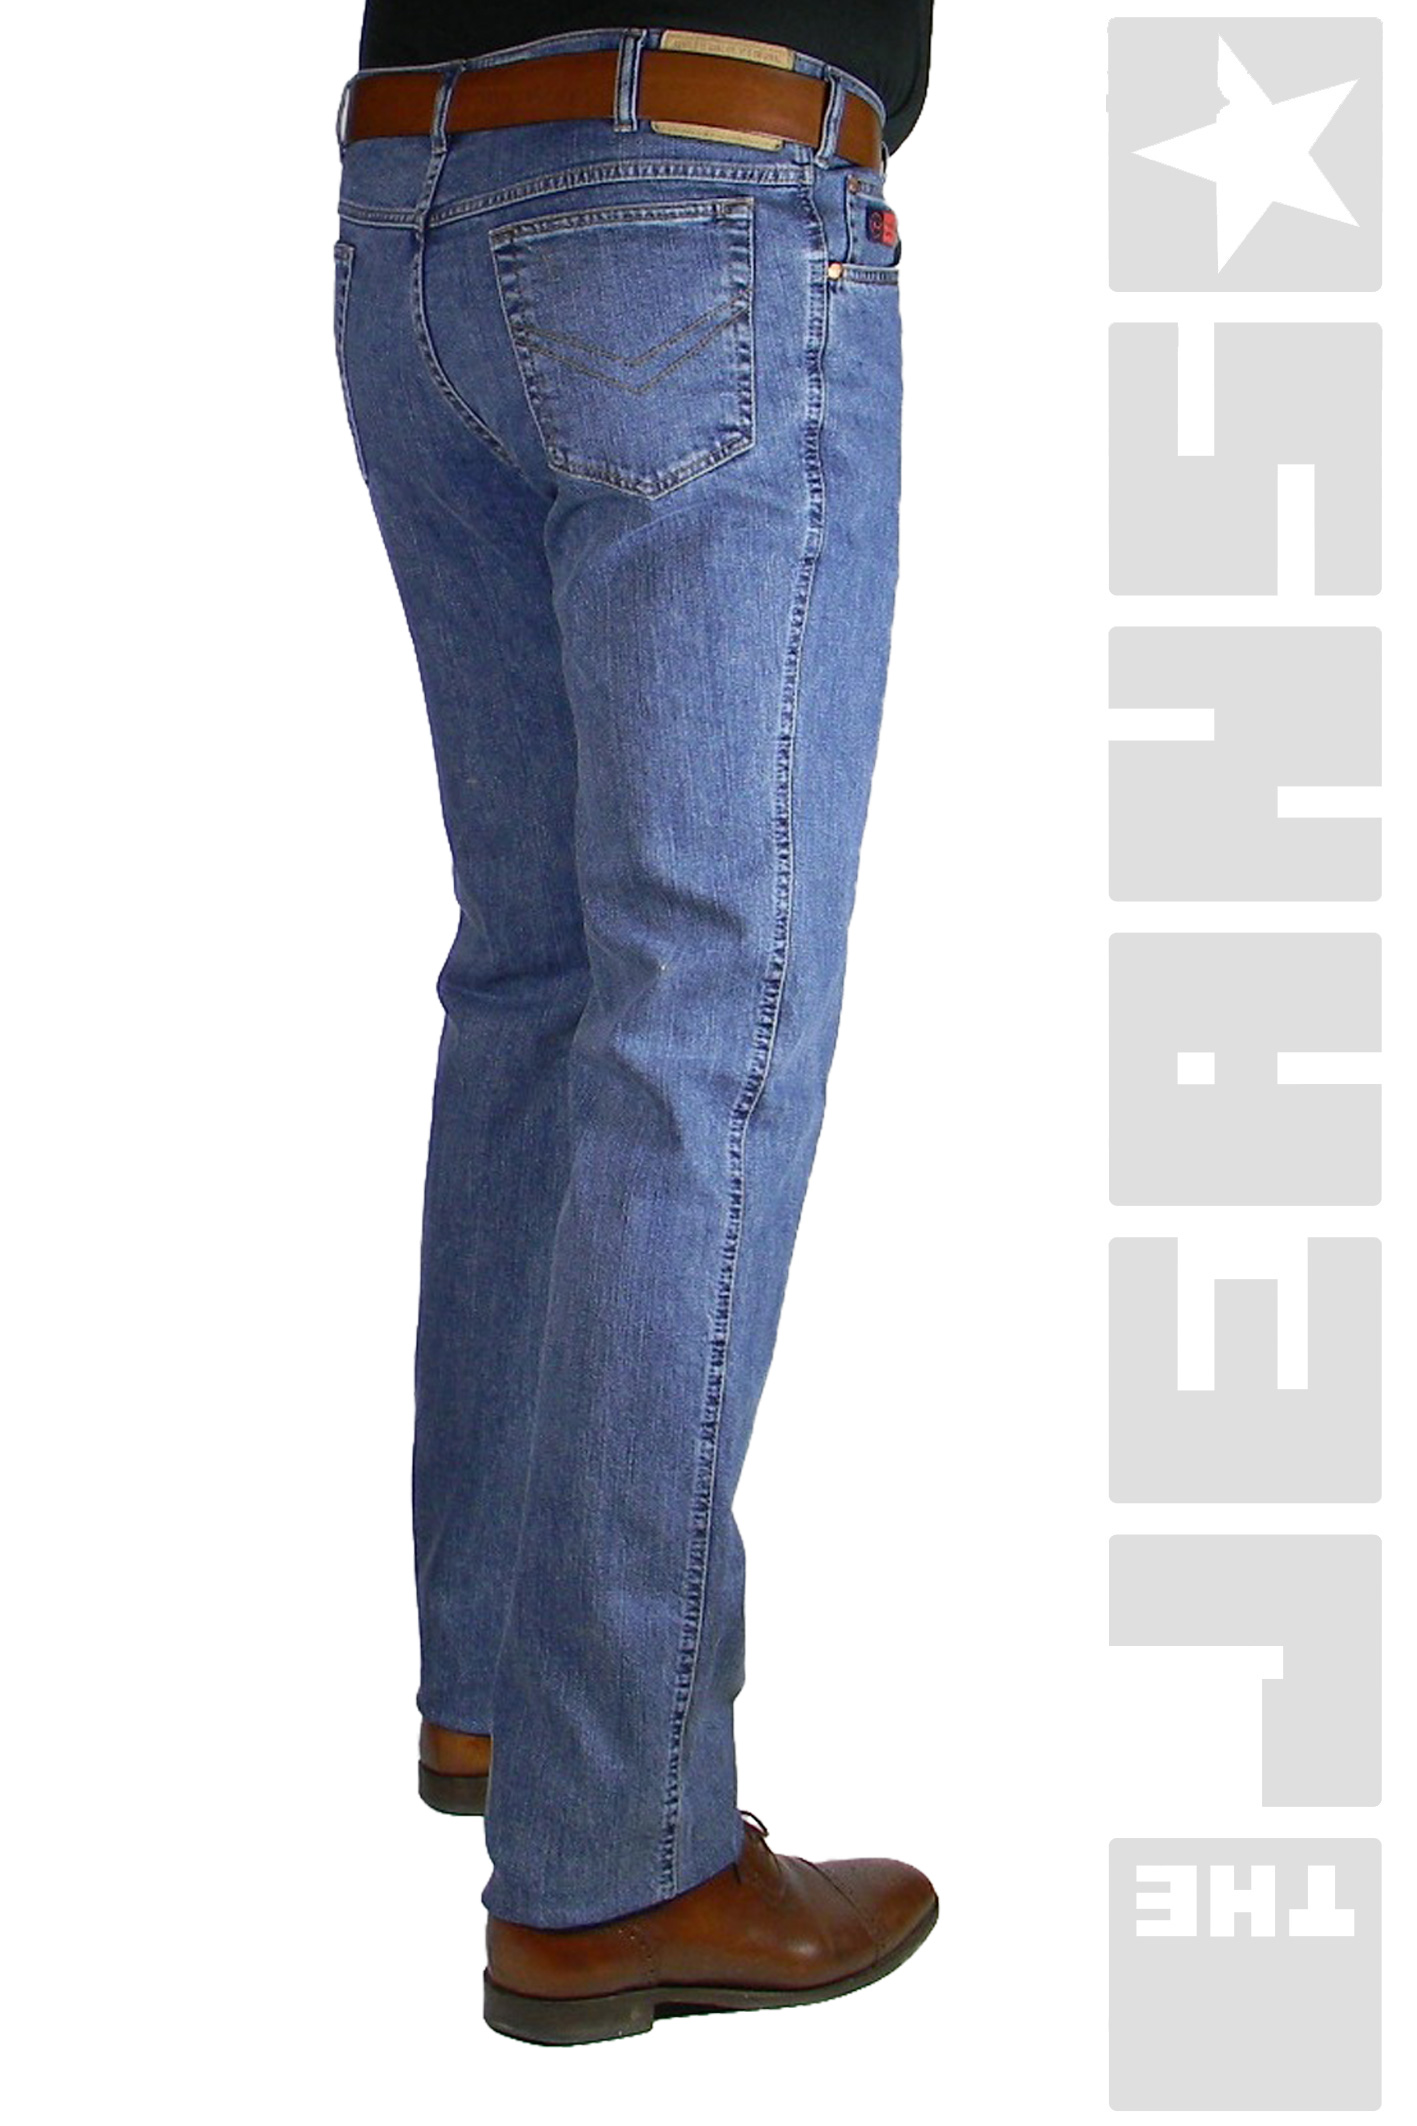 Redpoint Jeans Übergröße Herren Jeanshose Blau Große Größen bis Inch-Weite 54 